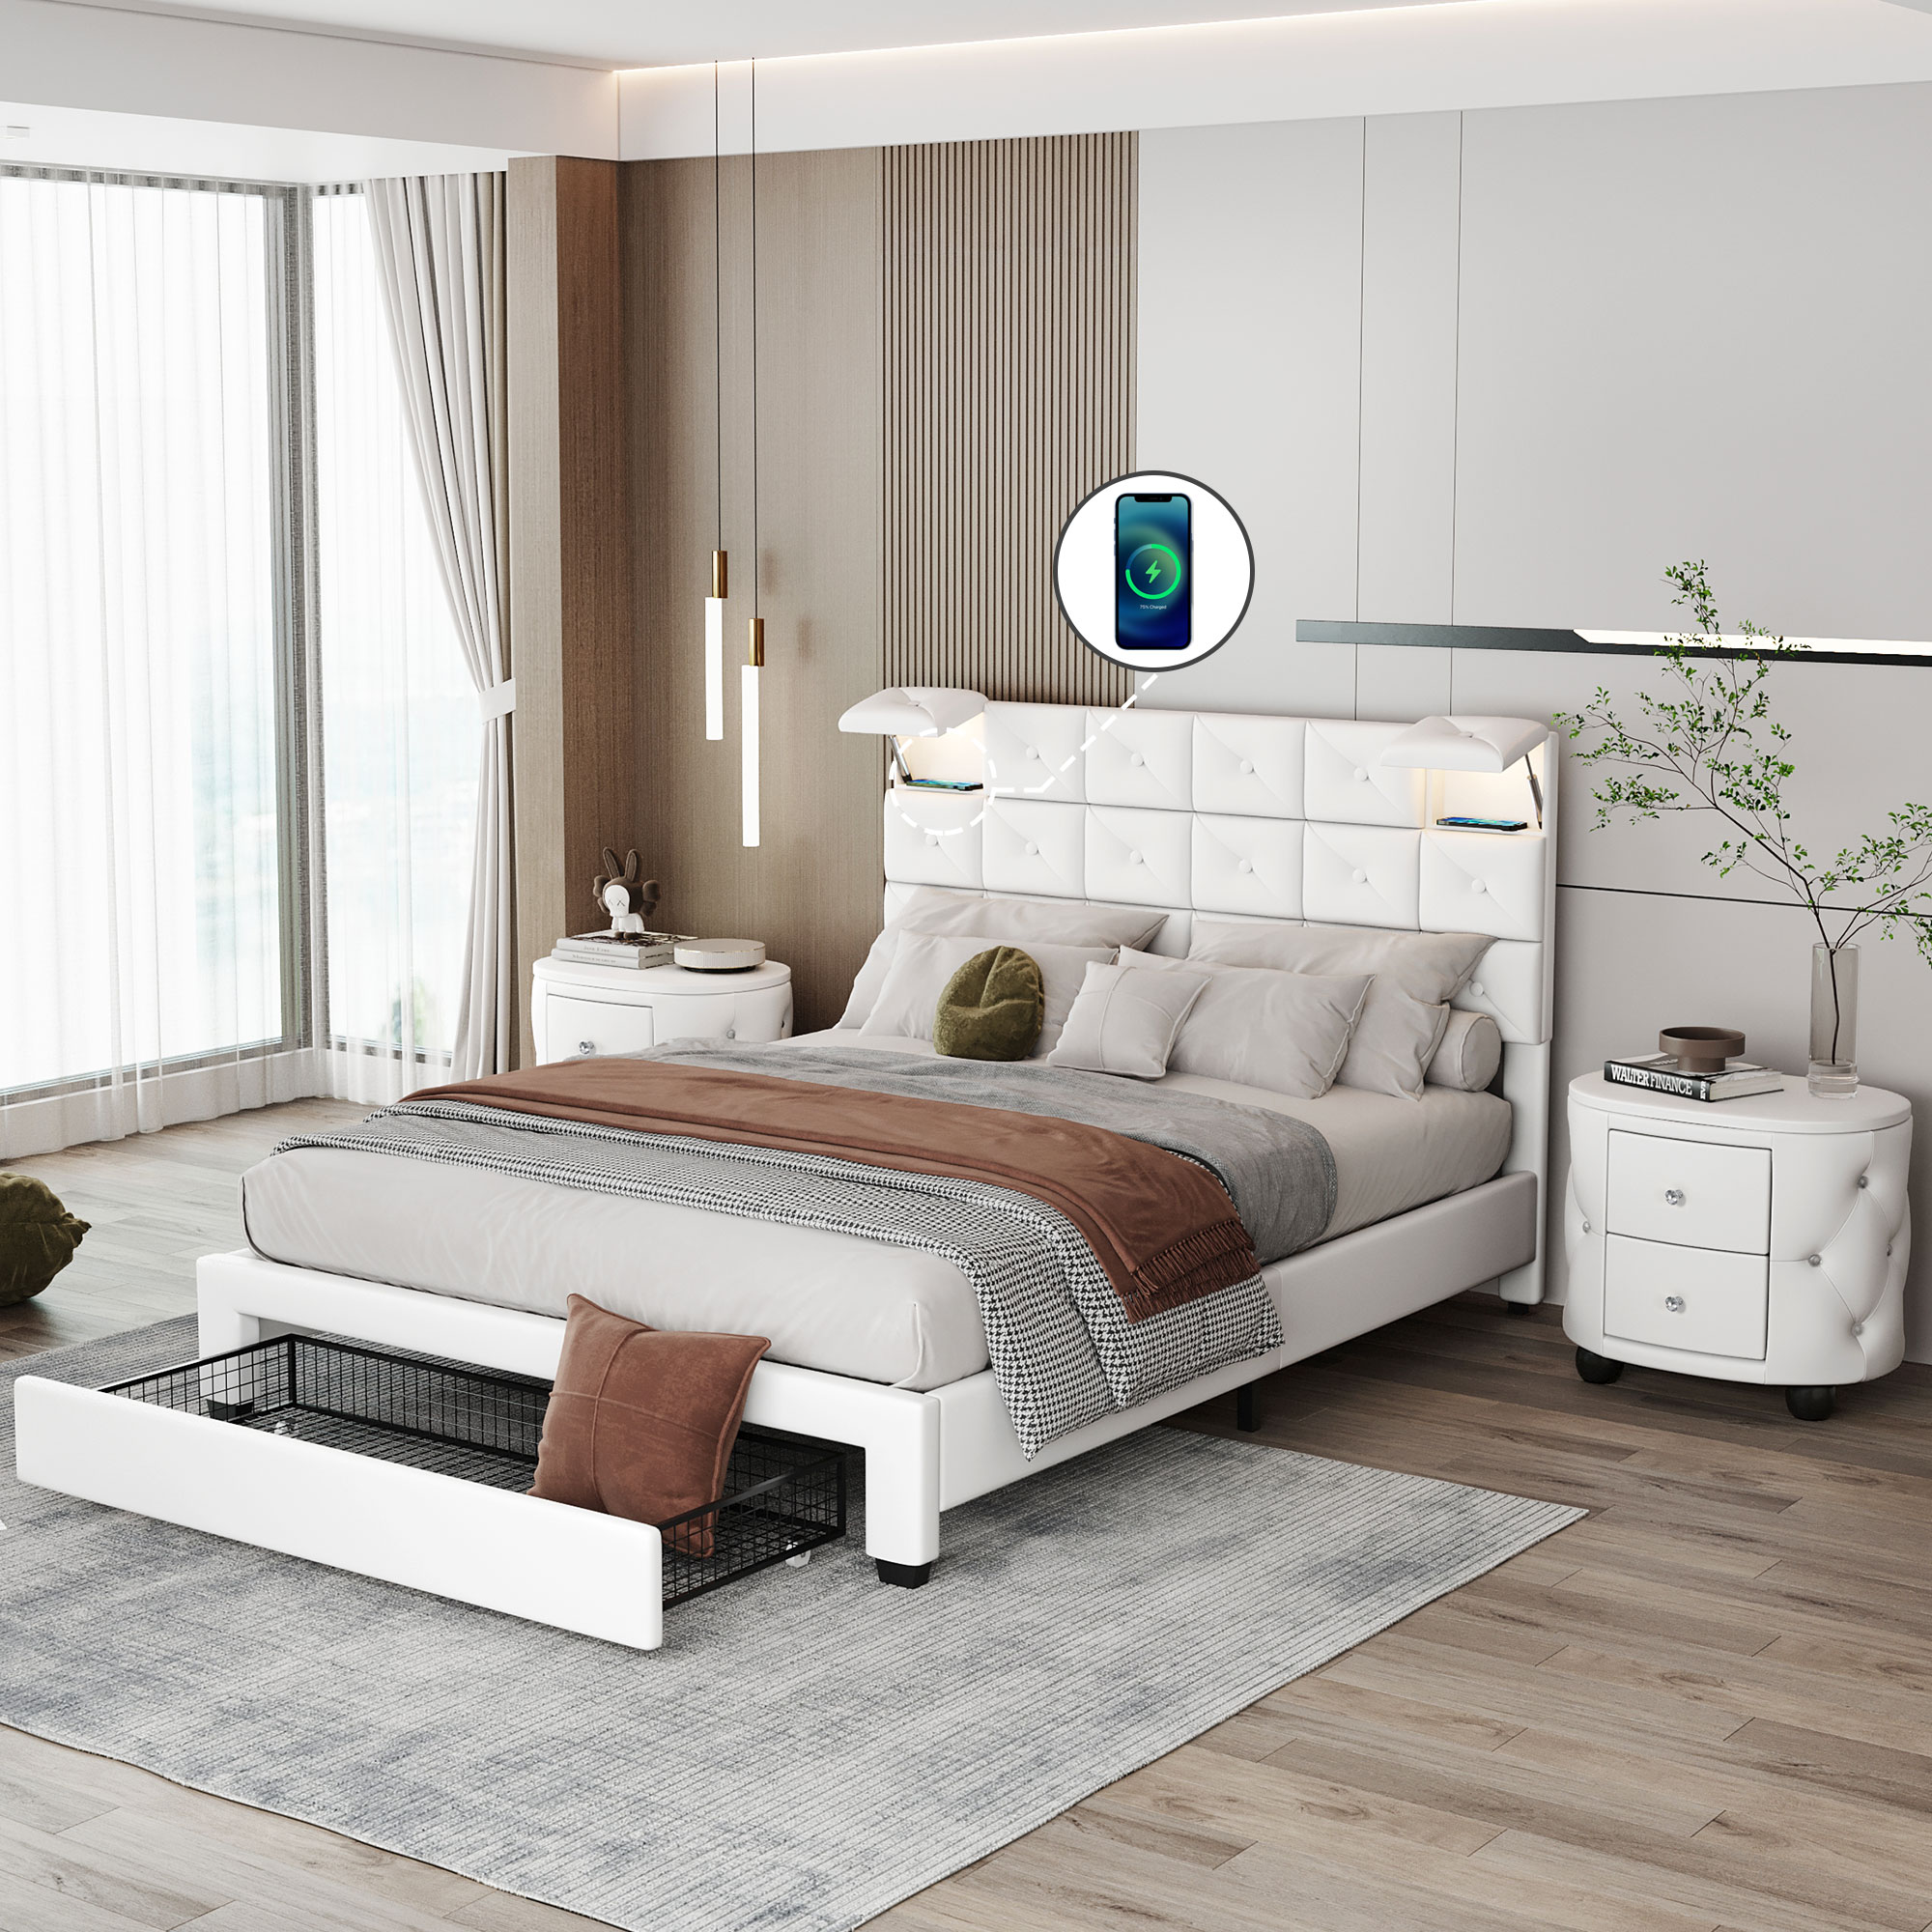 3-Pieces Bedroom Sets, Queen Size Upholstered Platform Bed - HL000010AAK